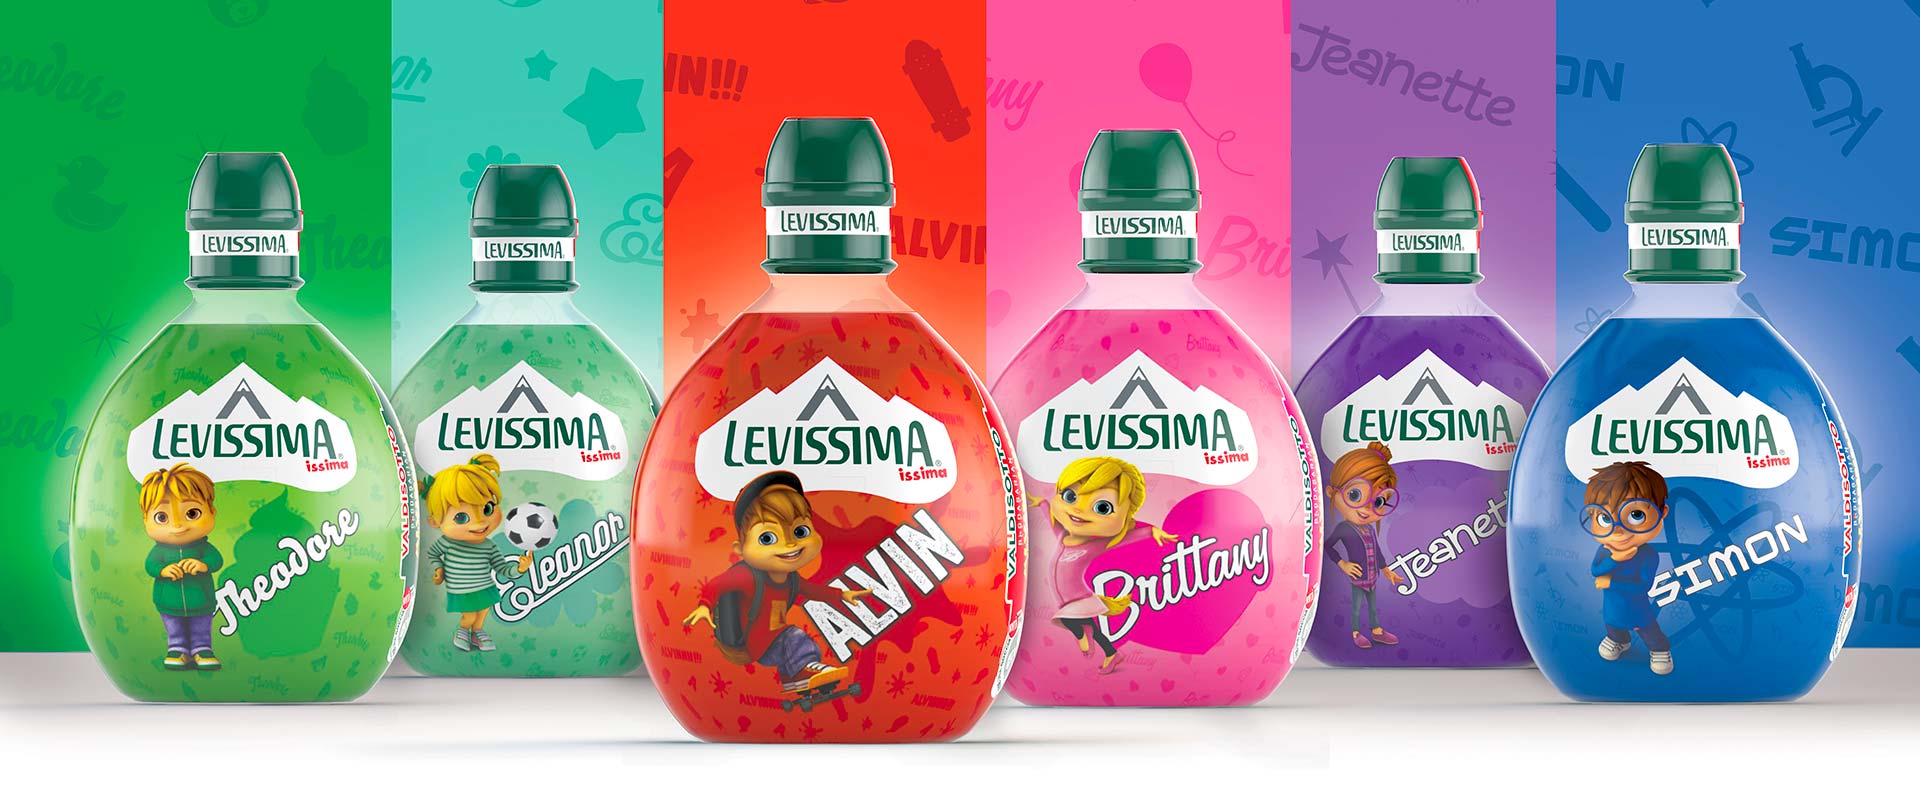 Special edition di Levissima Issima con licensing Alvin Superstar